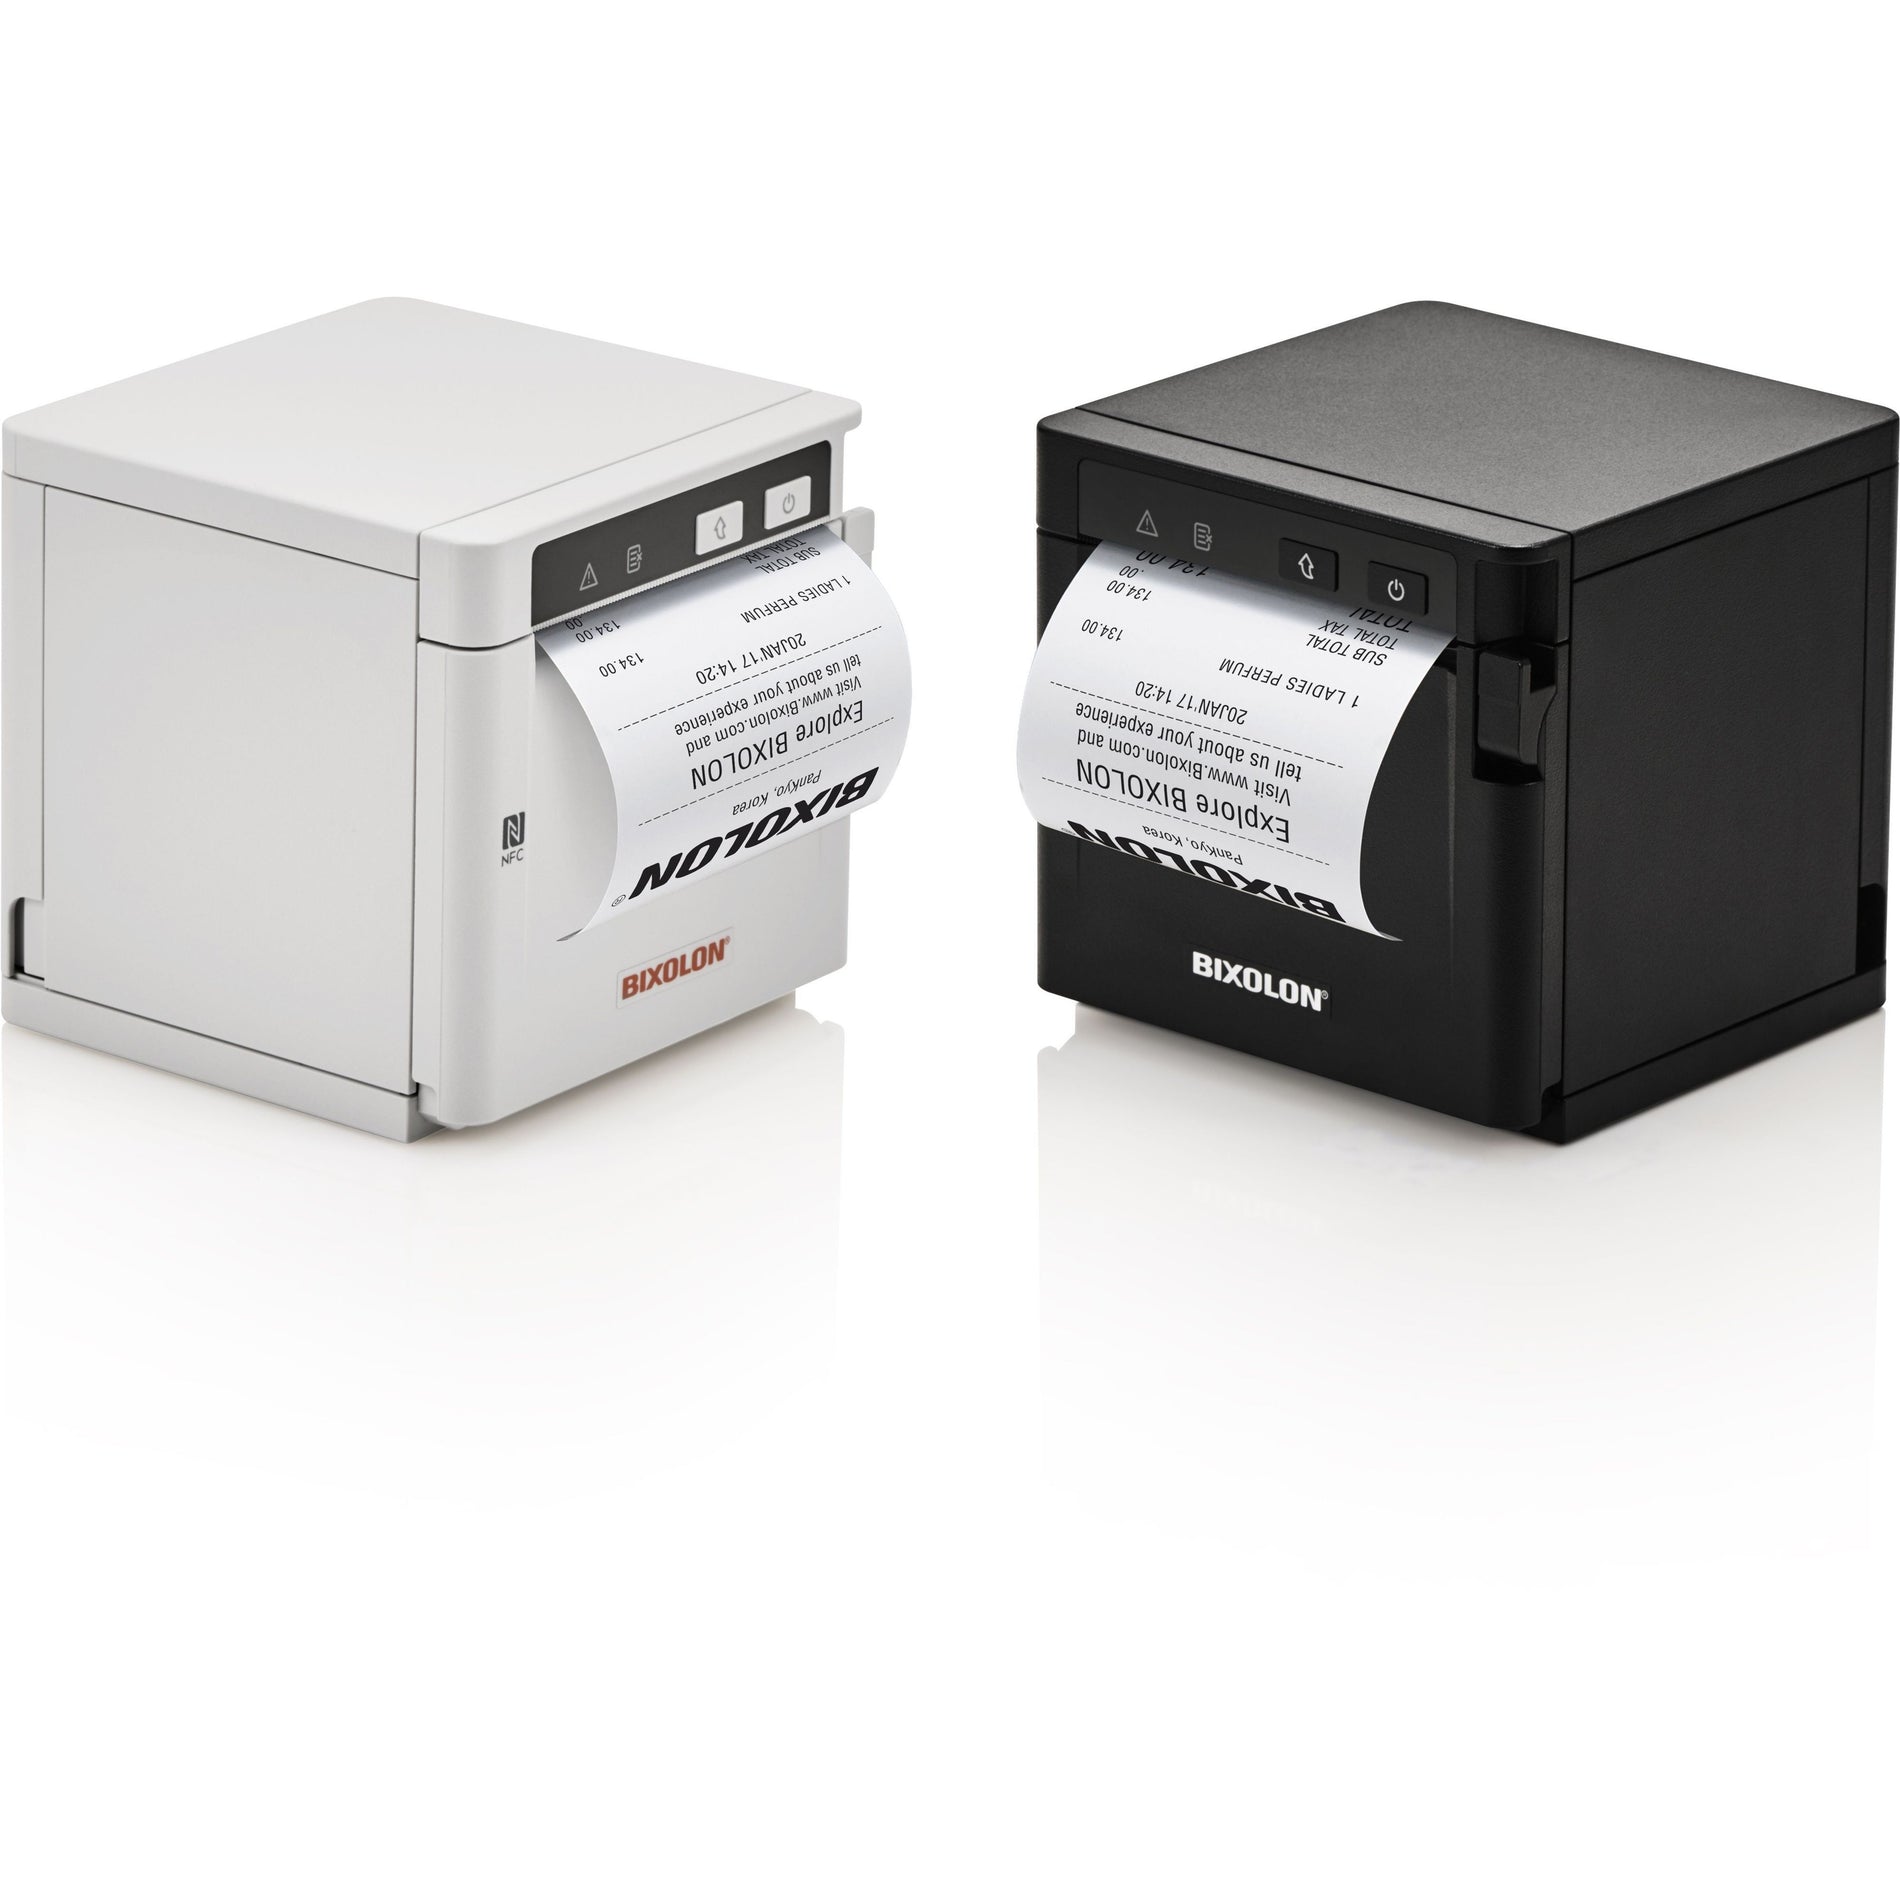 Bixolon SRP-Q302K SRP-Q302 3-inch mPOS Printer, USB&ENET, 220mm/sec Autocut, 203dpi, 80mm Paper, Power Supply